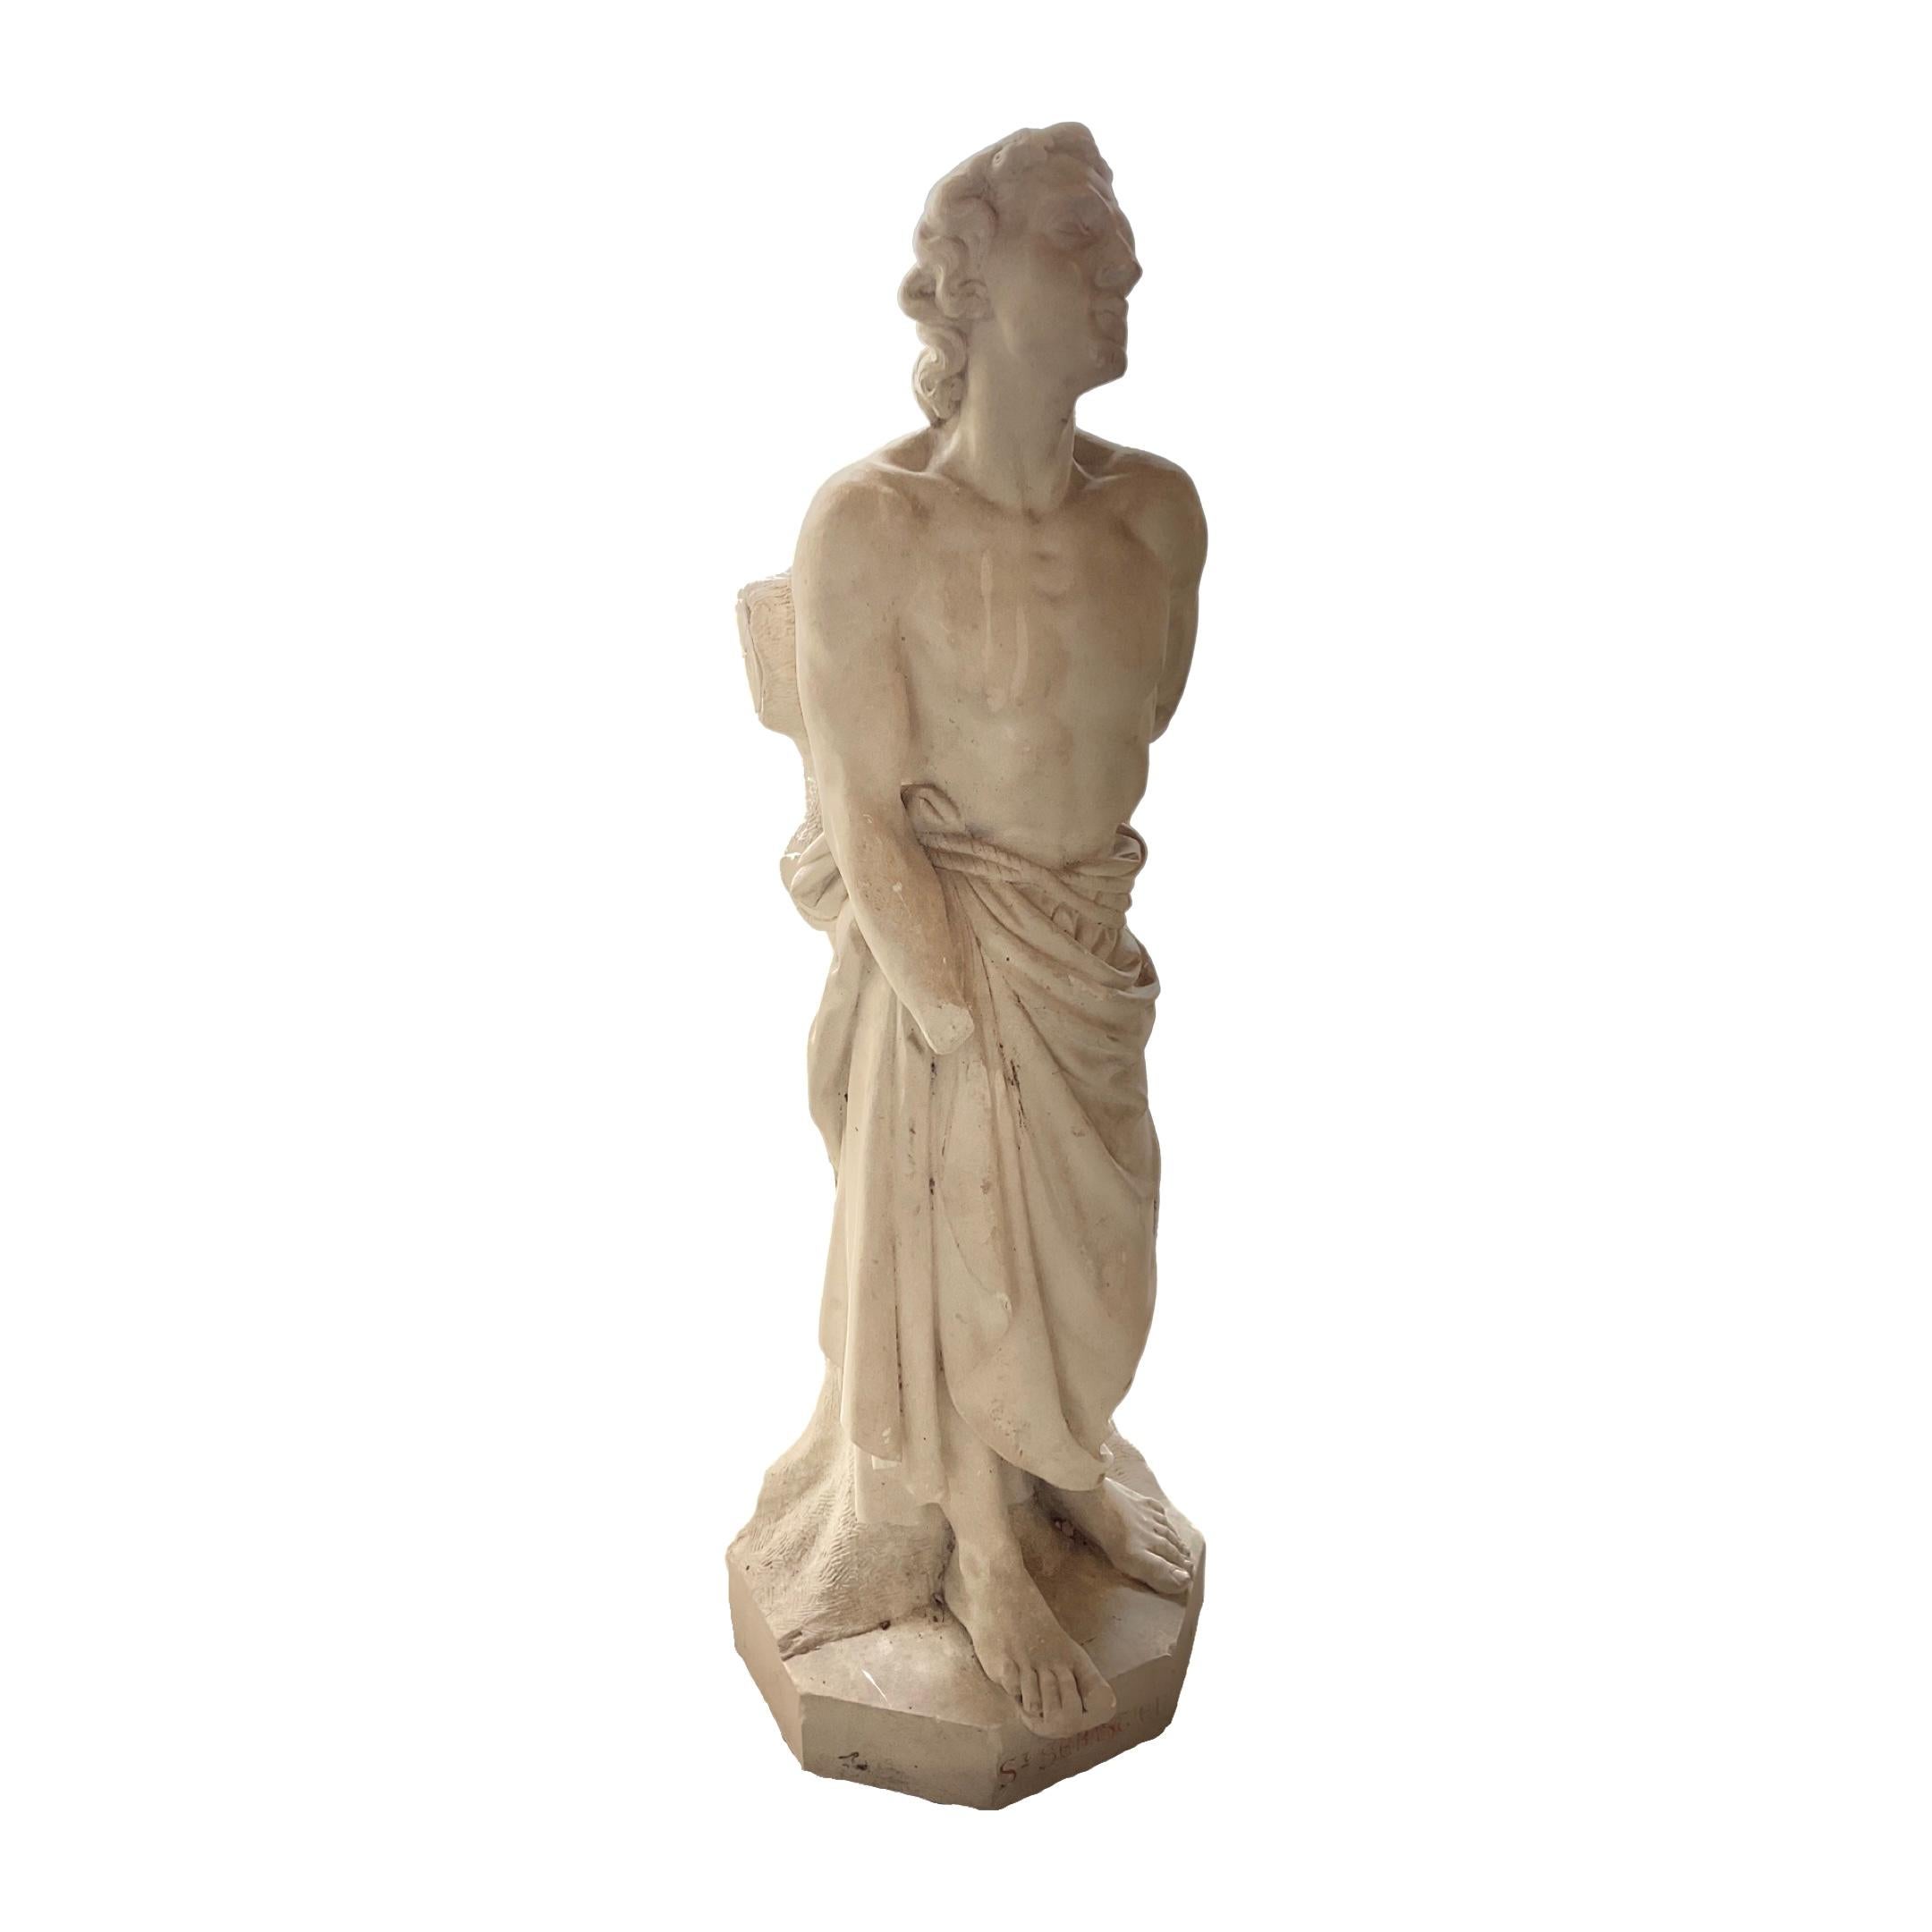 Cette sculpture de saint en pierre calcaire française est une création exquise du XVIIe siècle, qui témoigne d'un savoir-faire artisanal et constitue un souvenir durable de l'époque. Sa composition soignée en pierre calcaire française en fait un